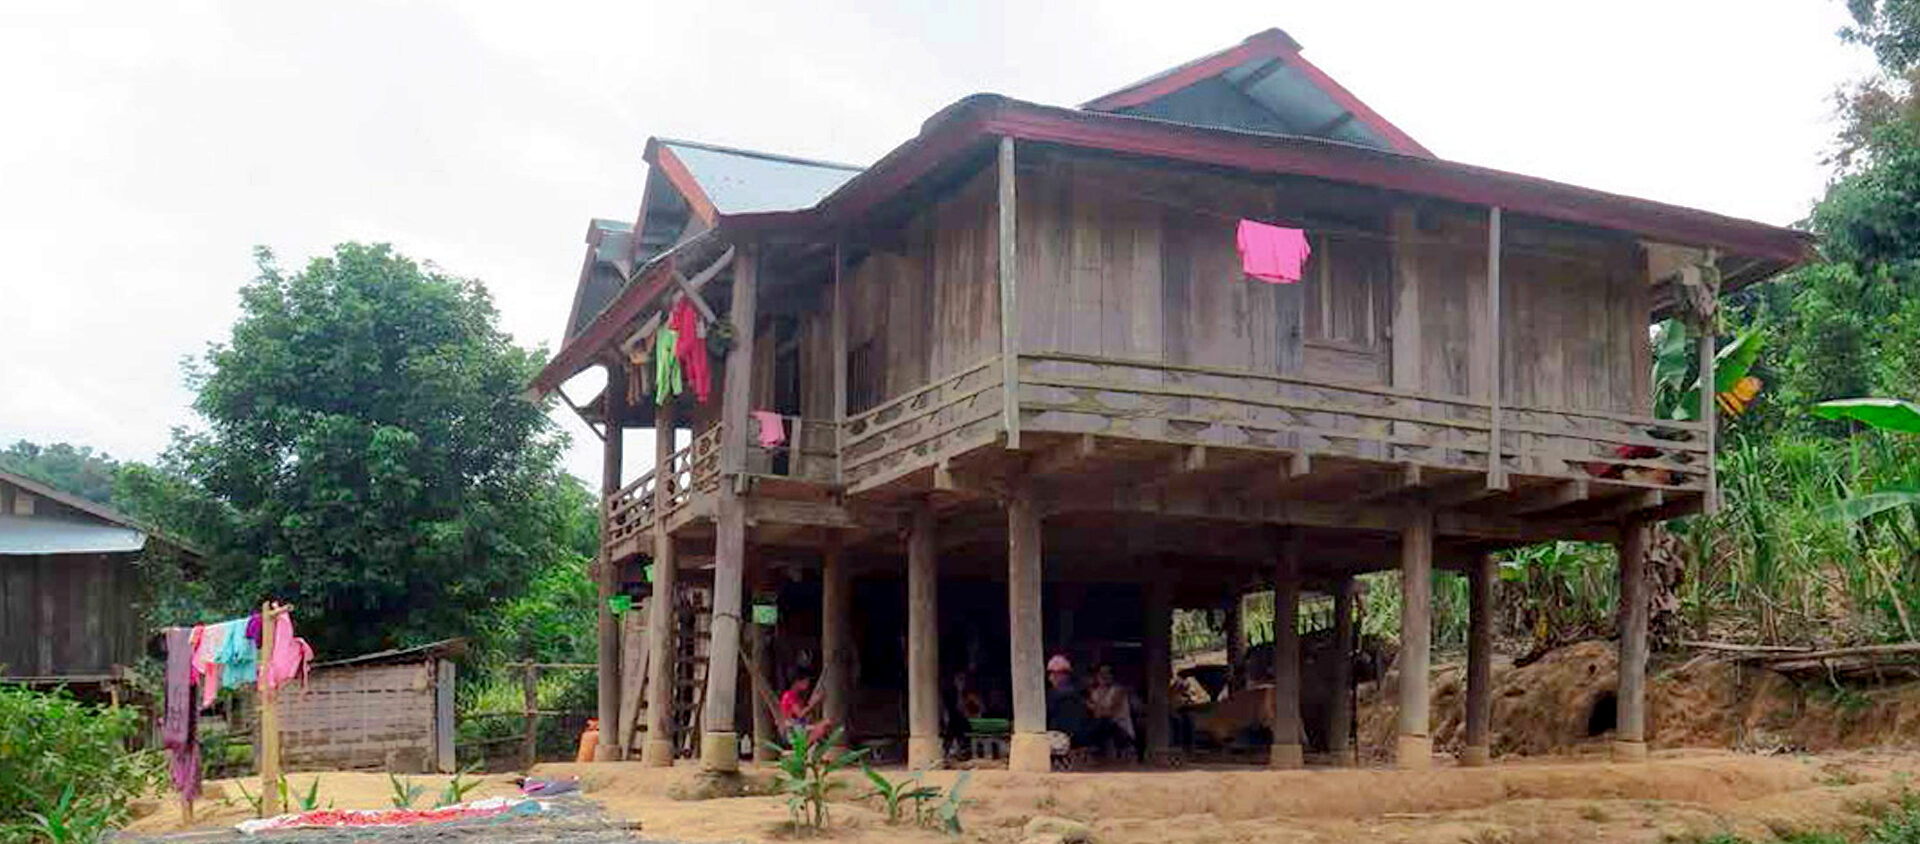 I norra Laos är husen byggda av trä för att det finns mycket skog. Husen är inte täta för det är varmt ute.